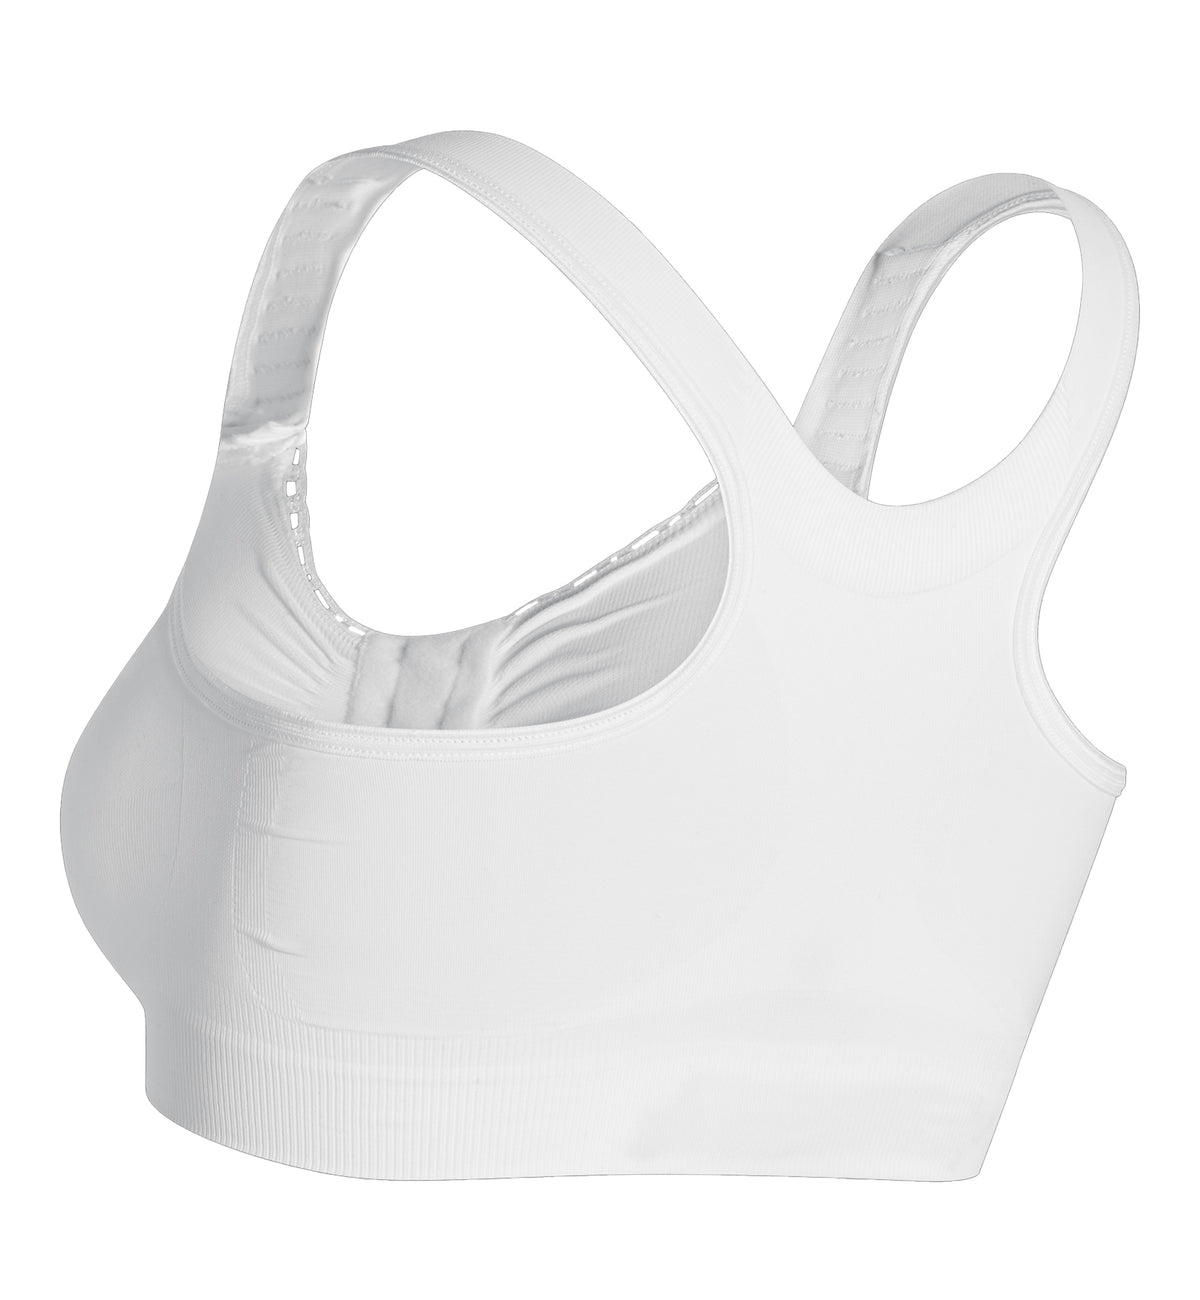 Carefix Alice Front Close Comfort Bra w/ Adjustable Straps (329150),Medium,White - White,Medium